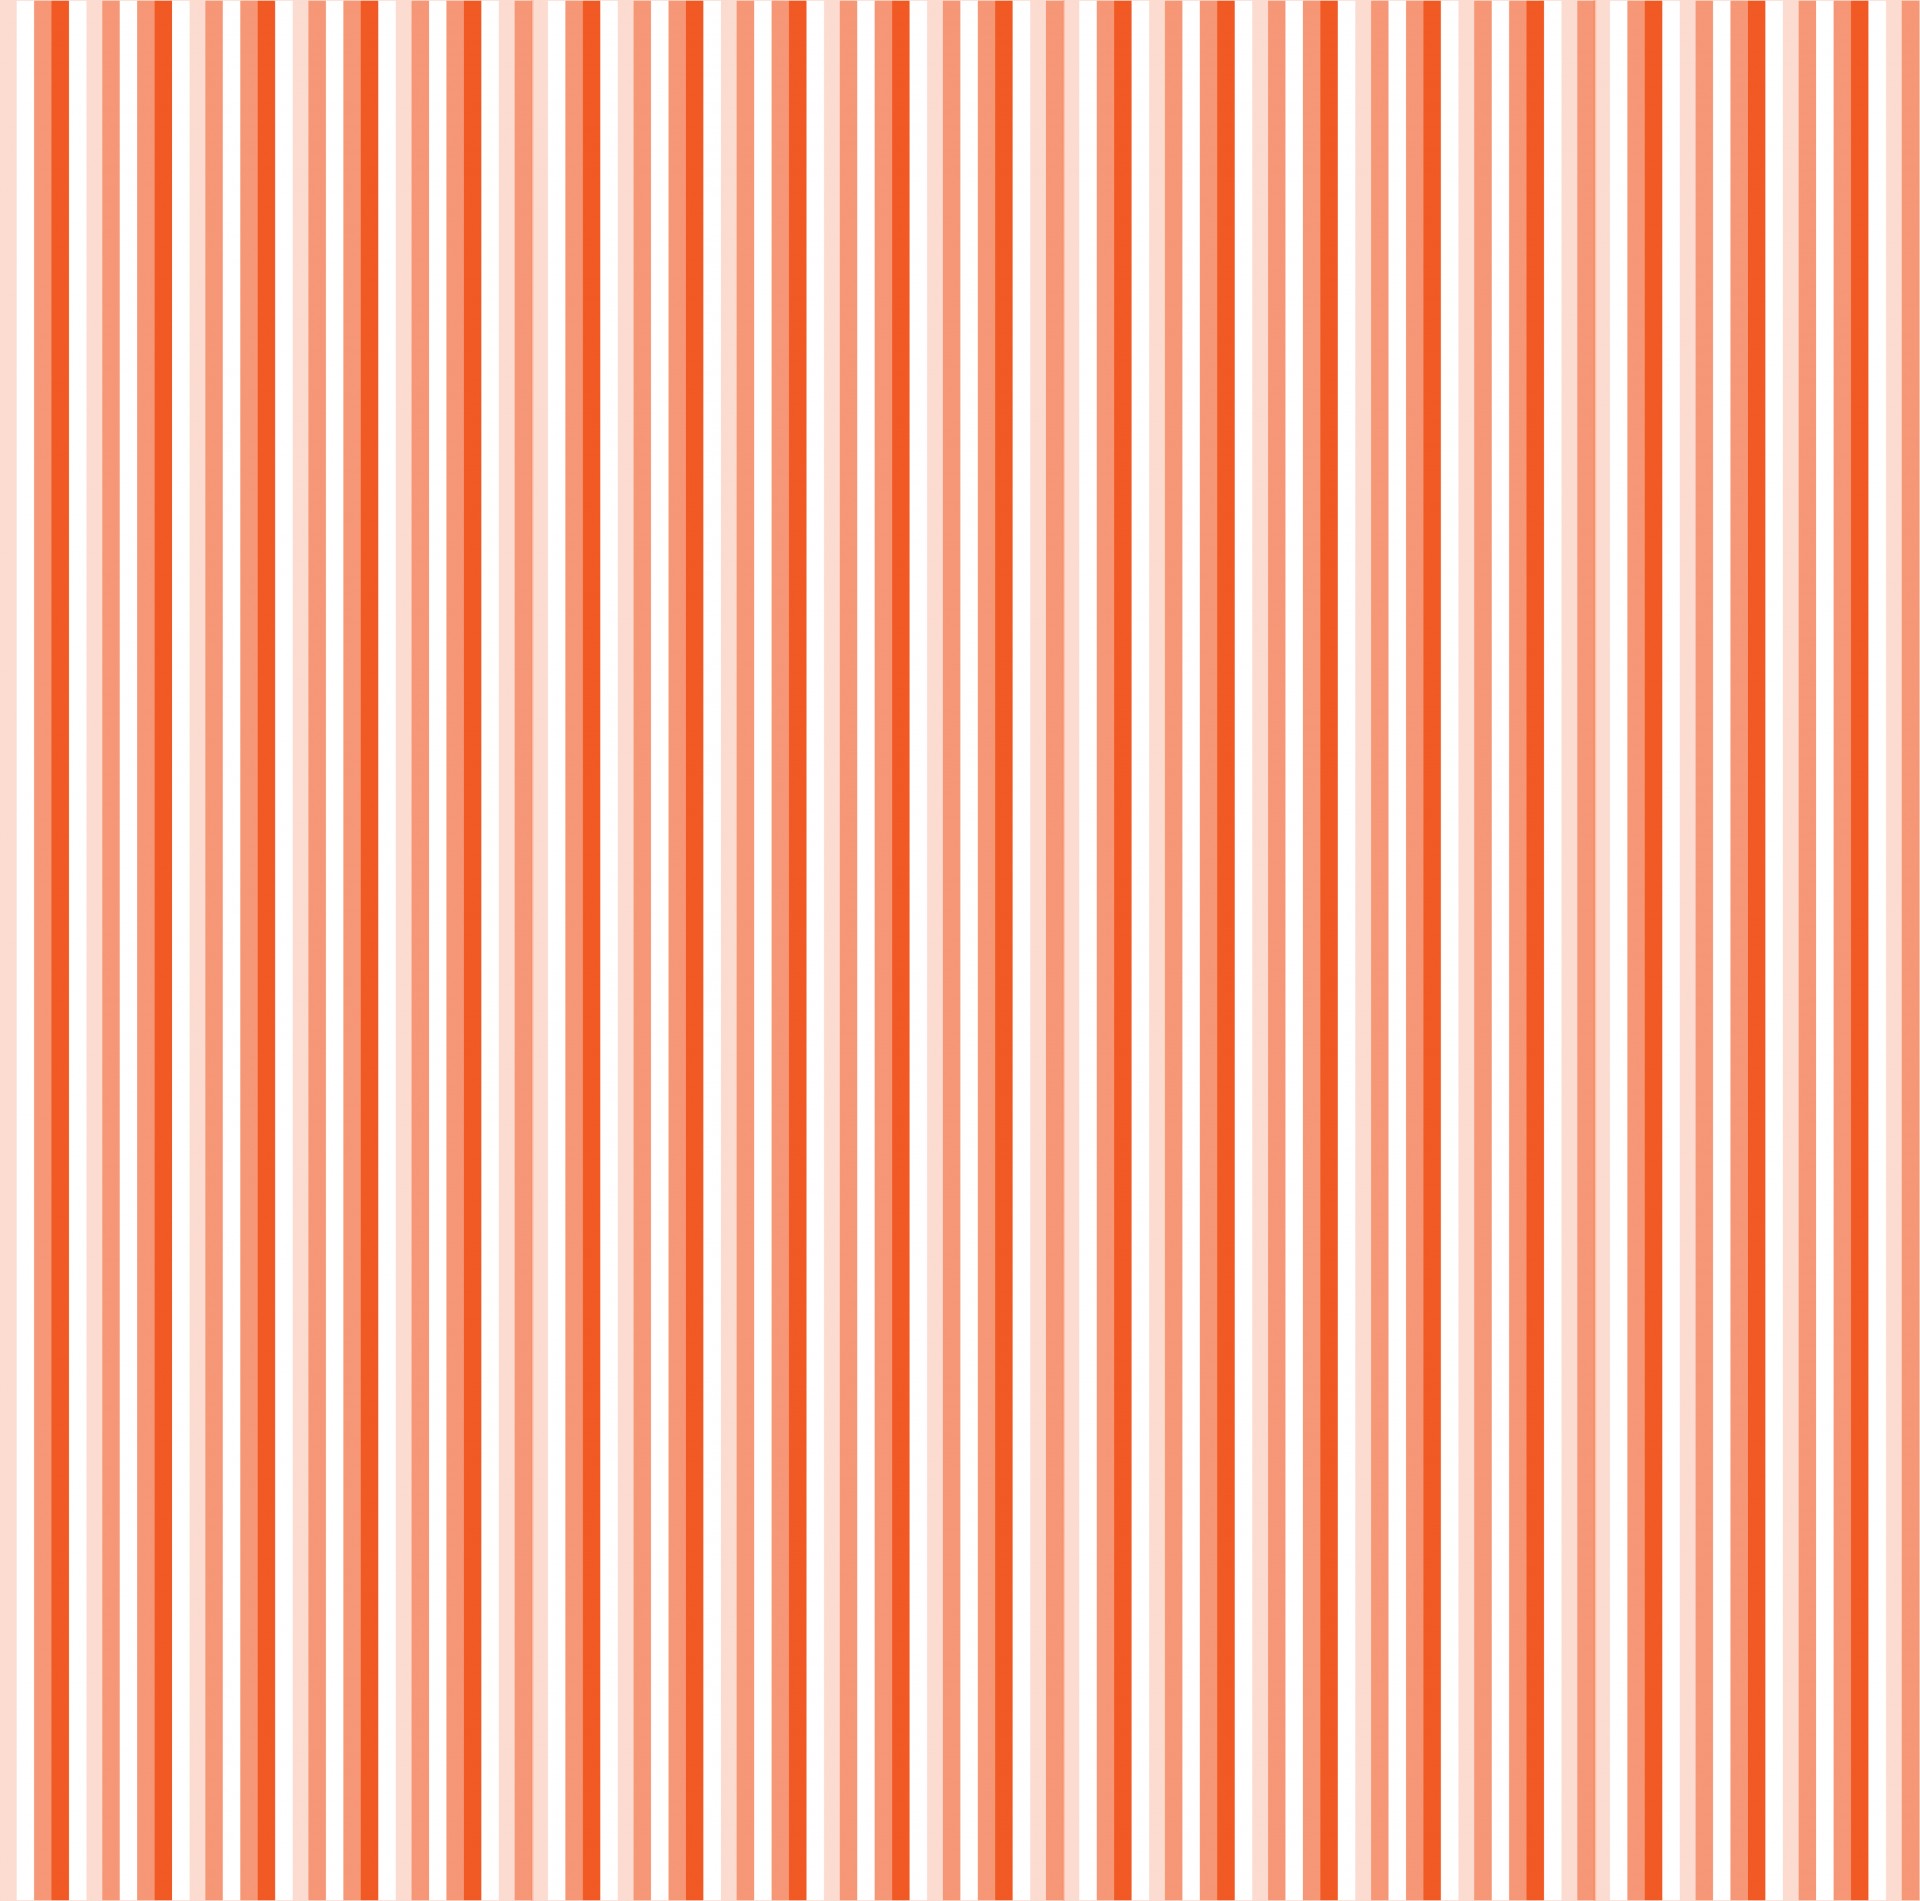 stripe stripes orange free photo